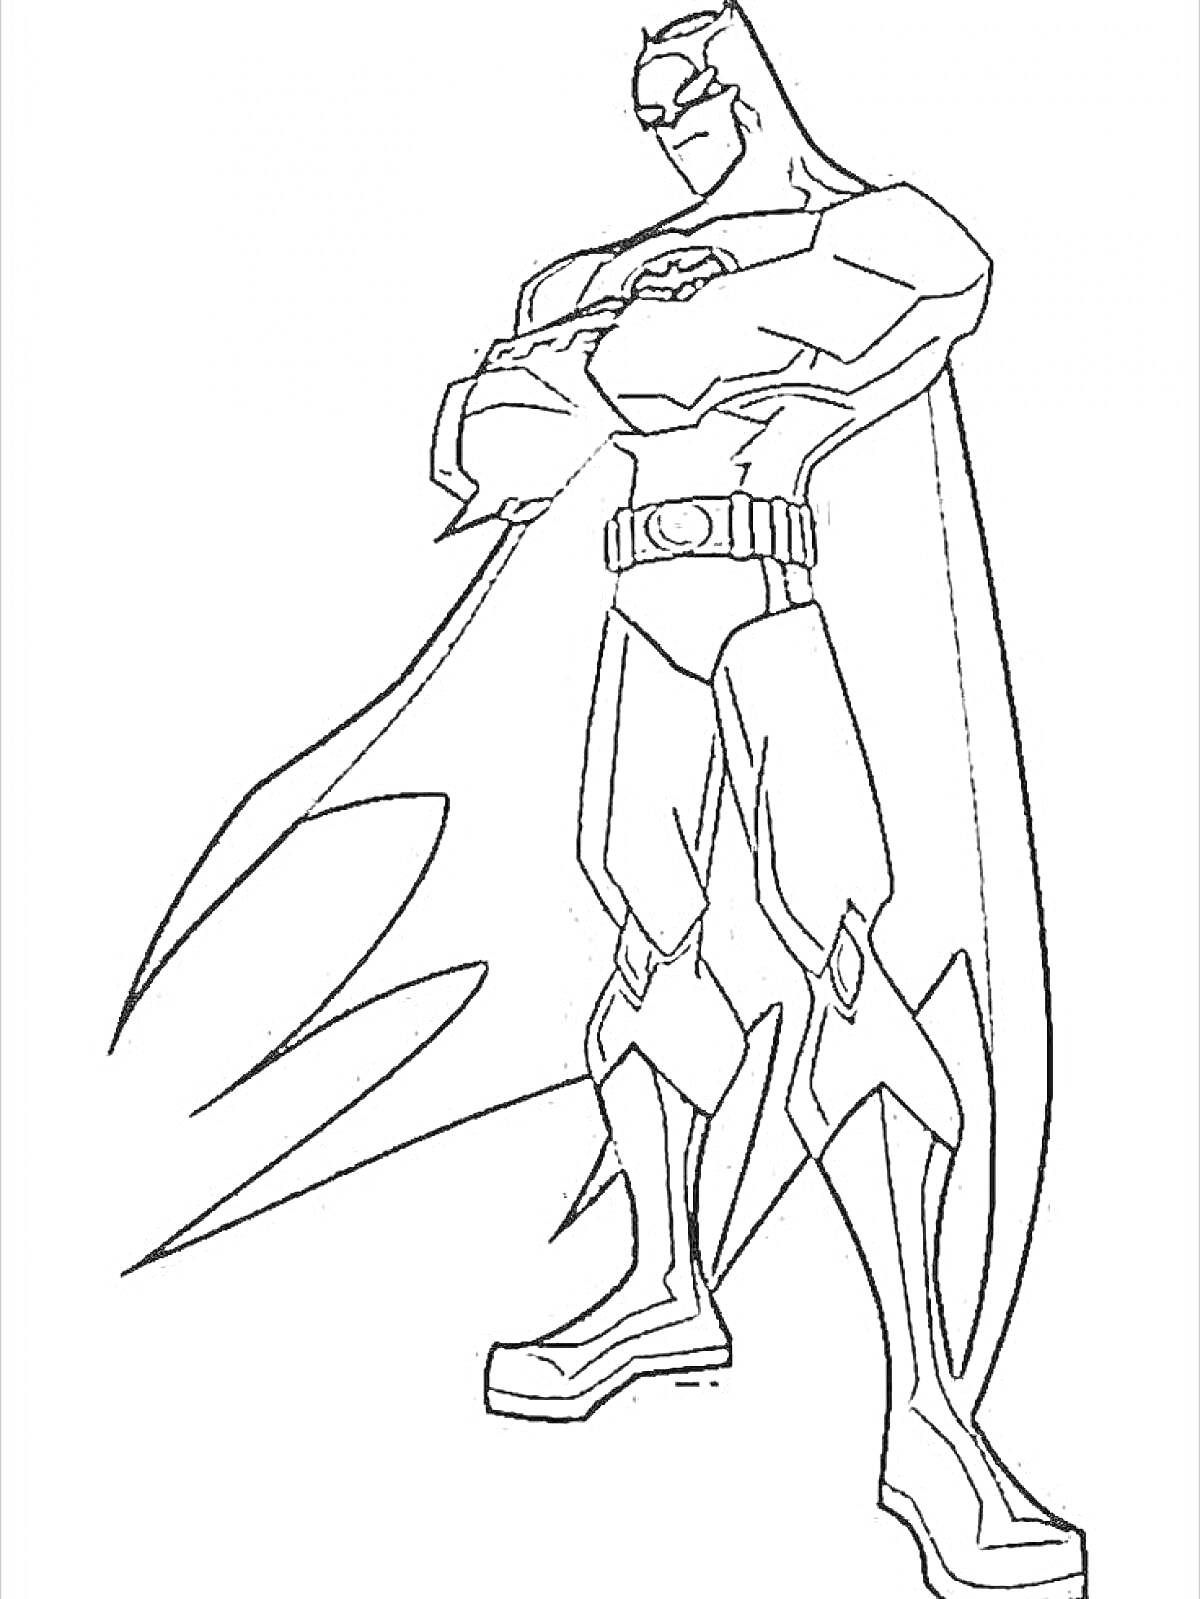 РаскраскаБэтмен стоящий в классической позе с поднятой рукой